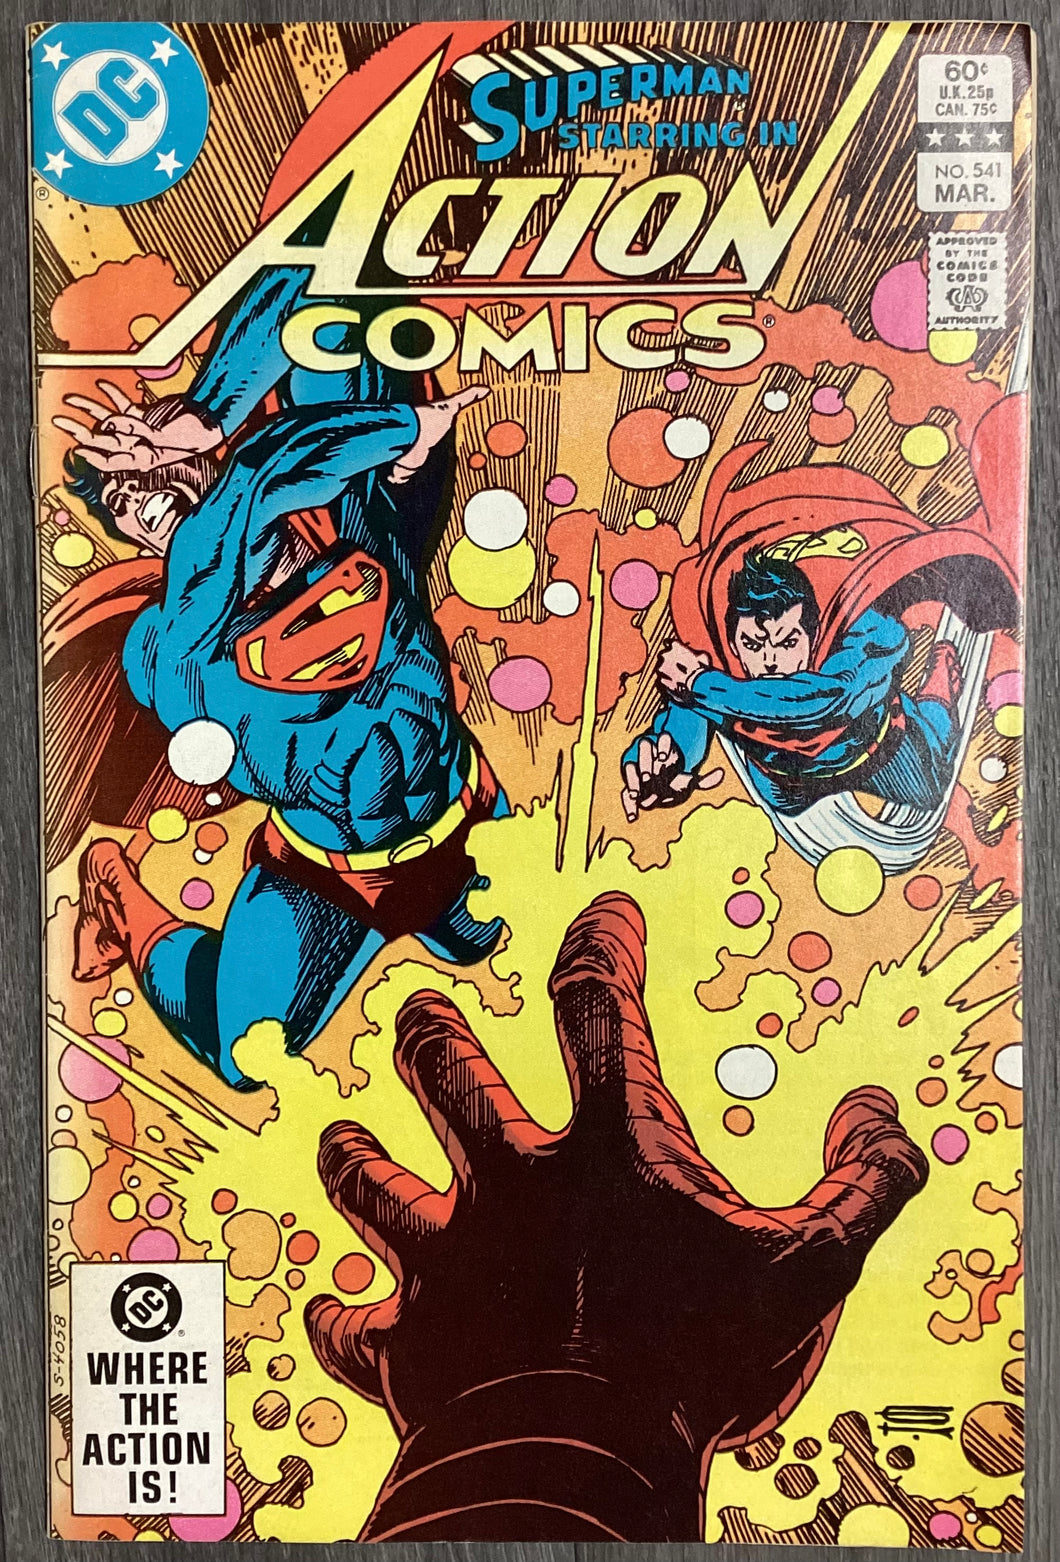 Action Comics No. #541 1983 DC Comics